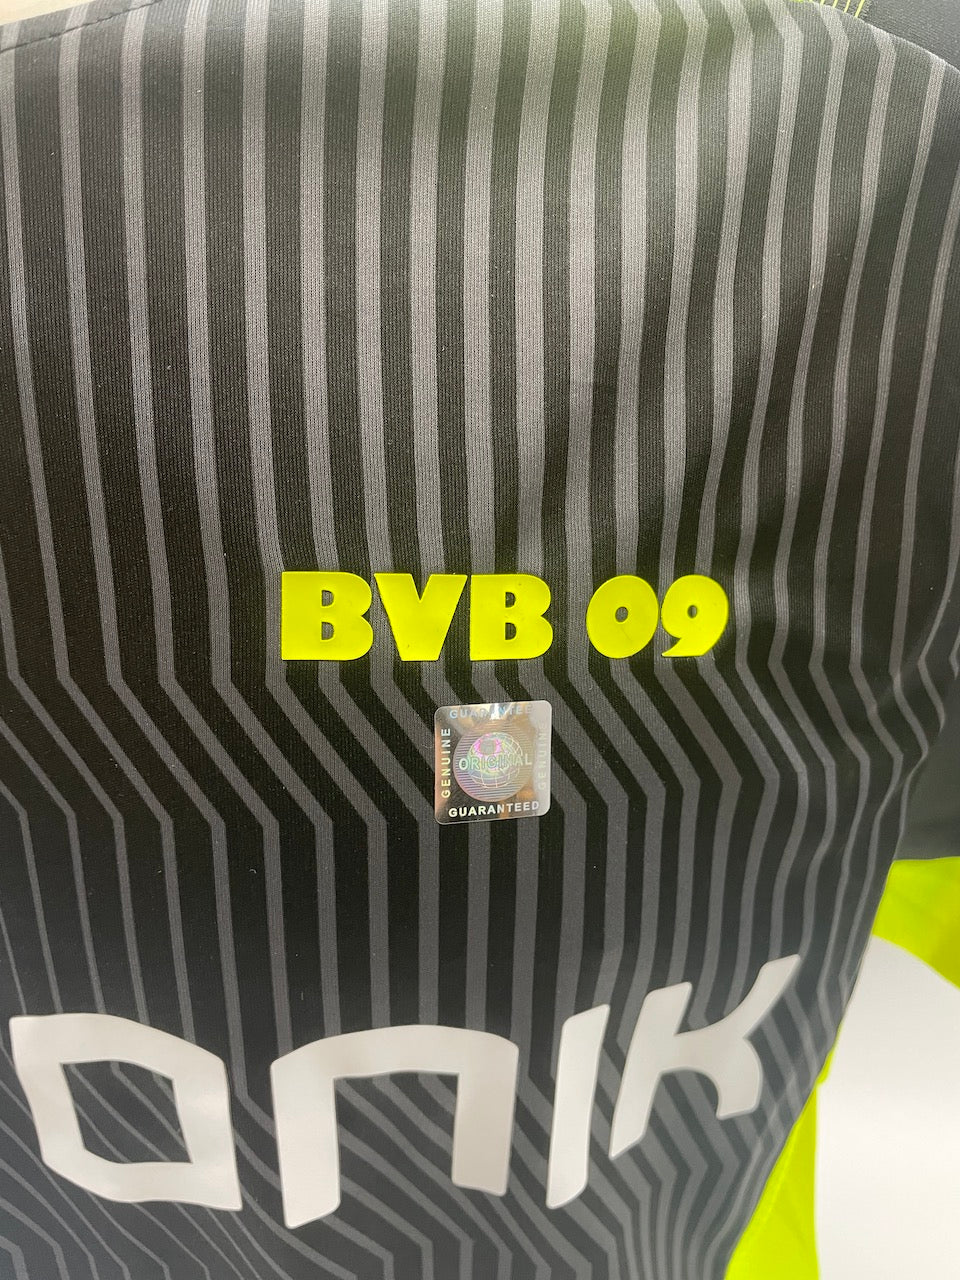 Borussia Dortmund Shirt Niclas Füllkrug signiert BVB Autogramm Bundesliga COA L